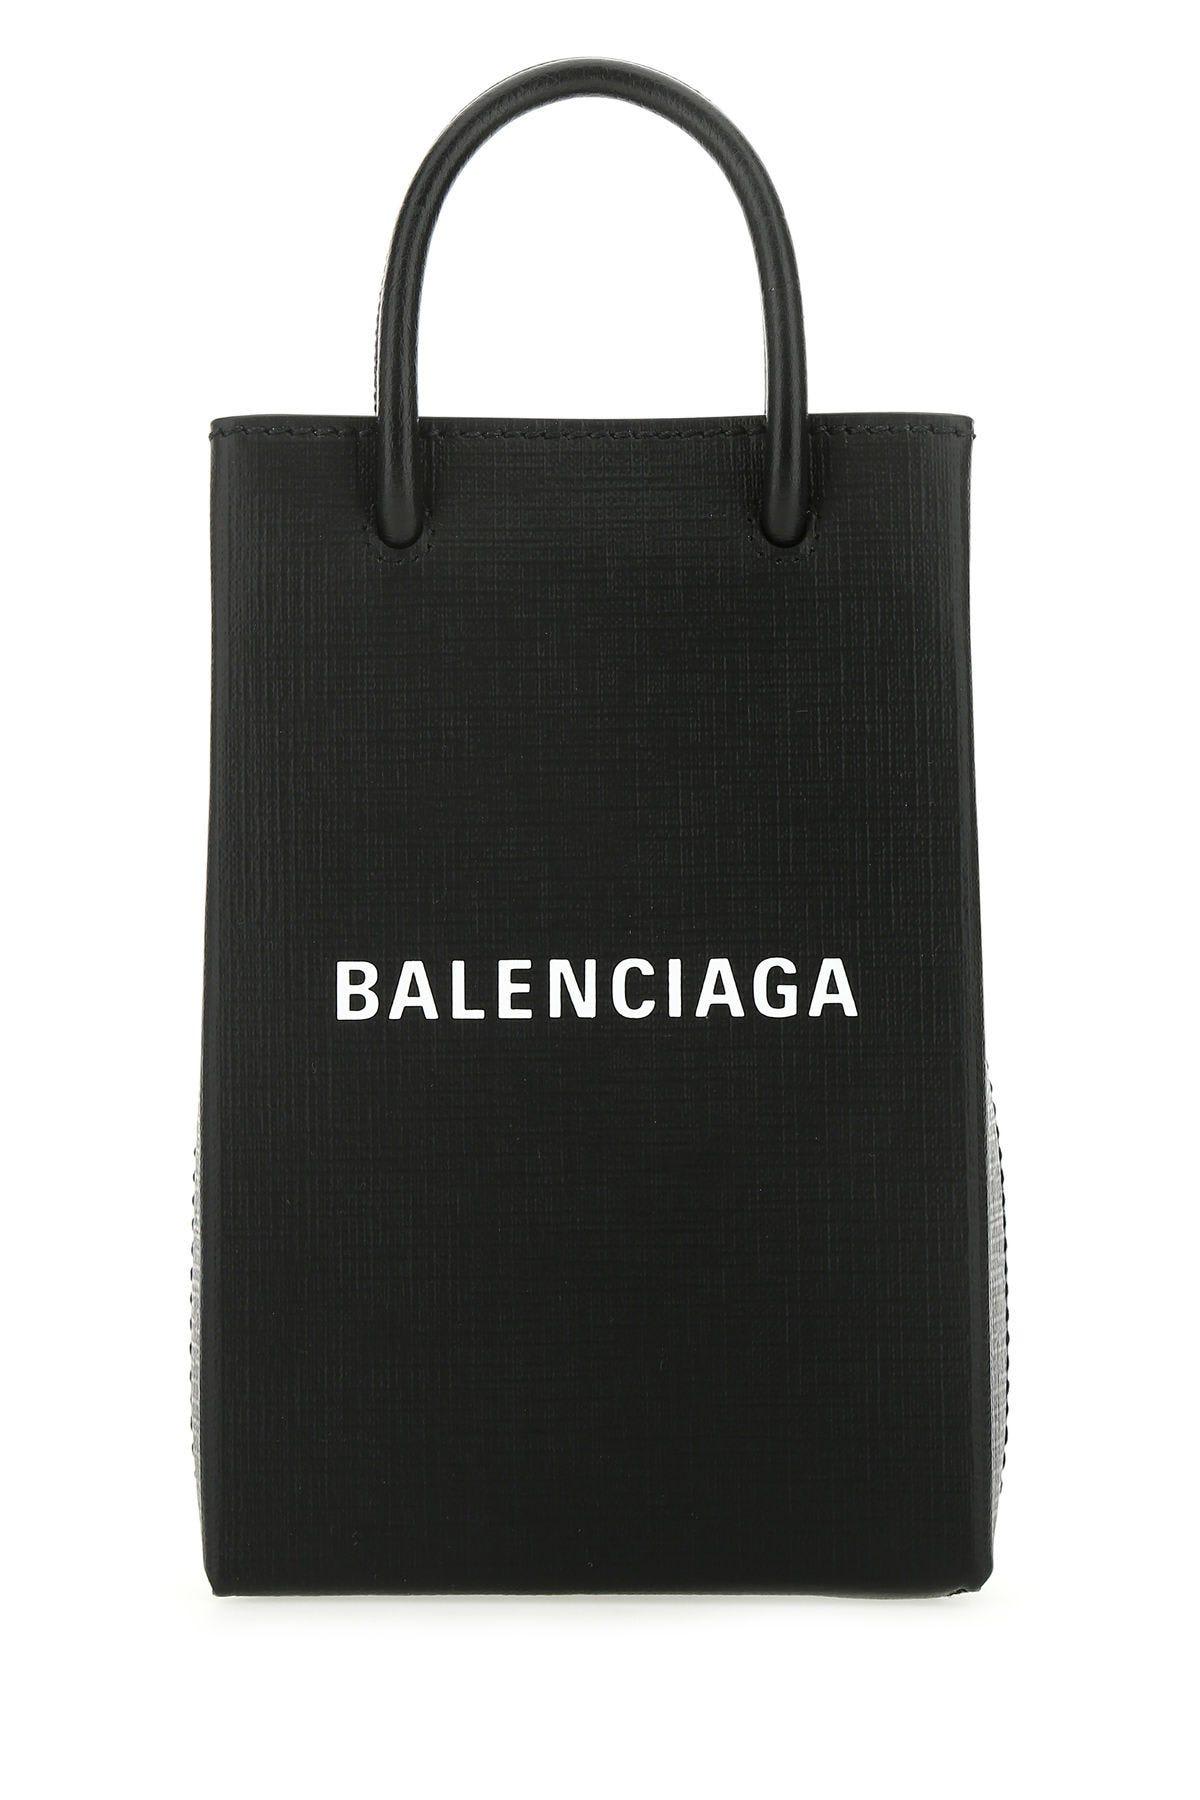 Balenciaga Black Leather Handbag